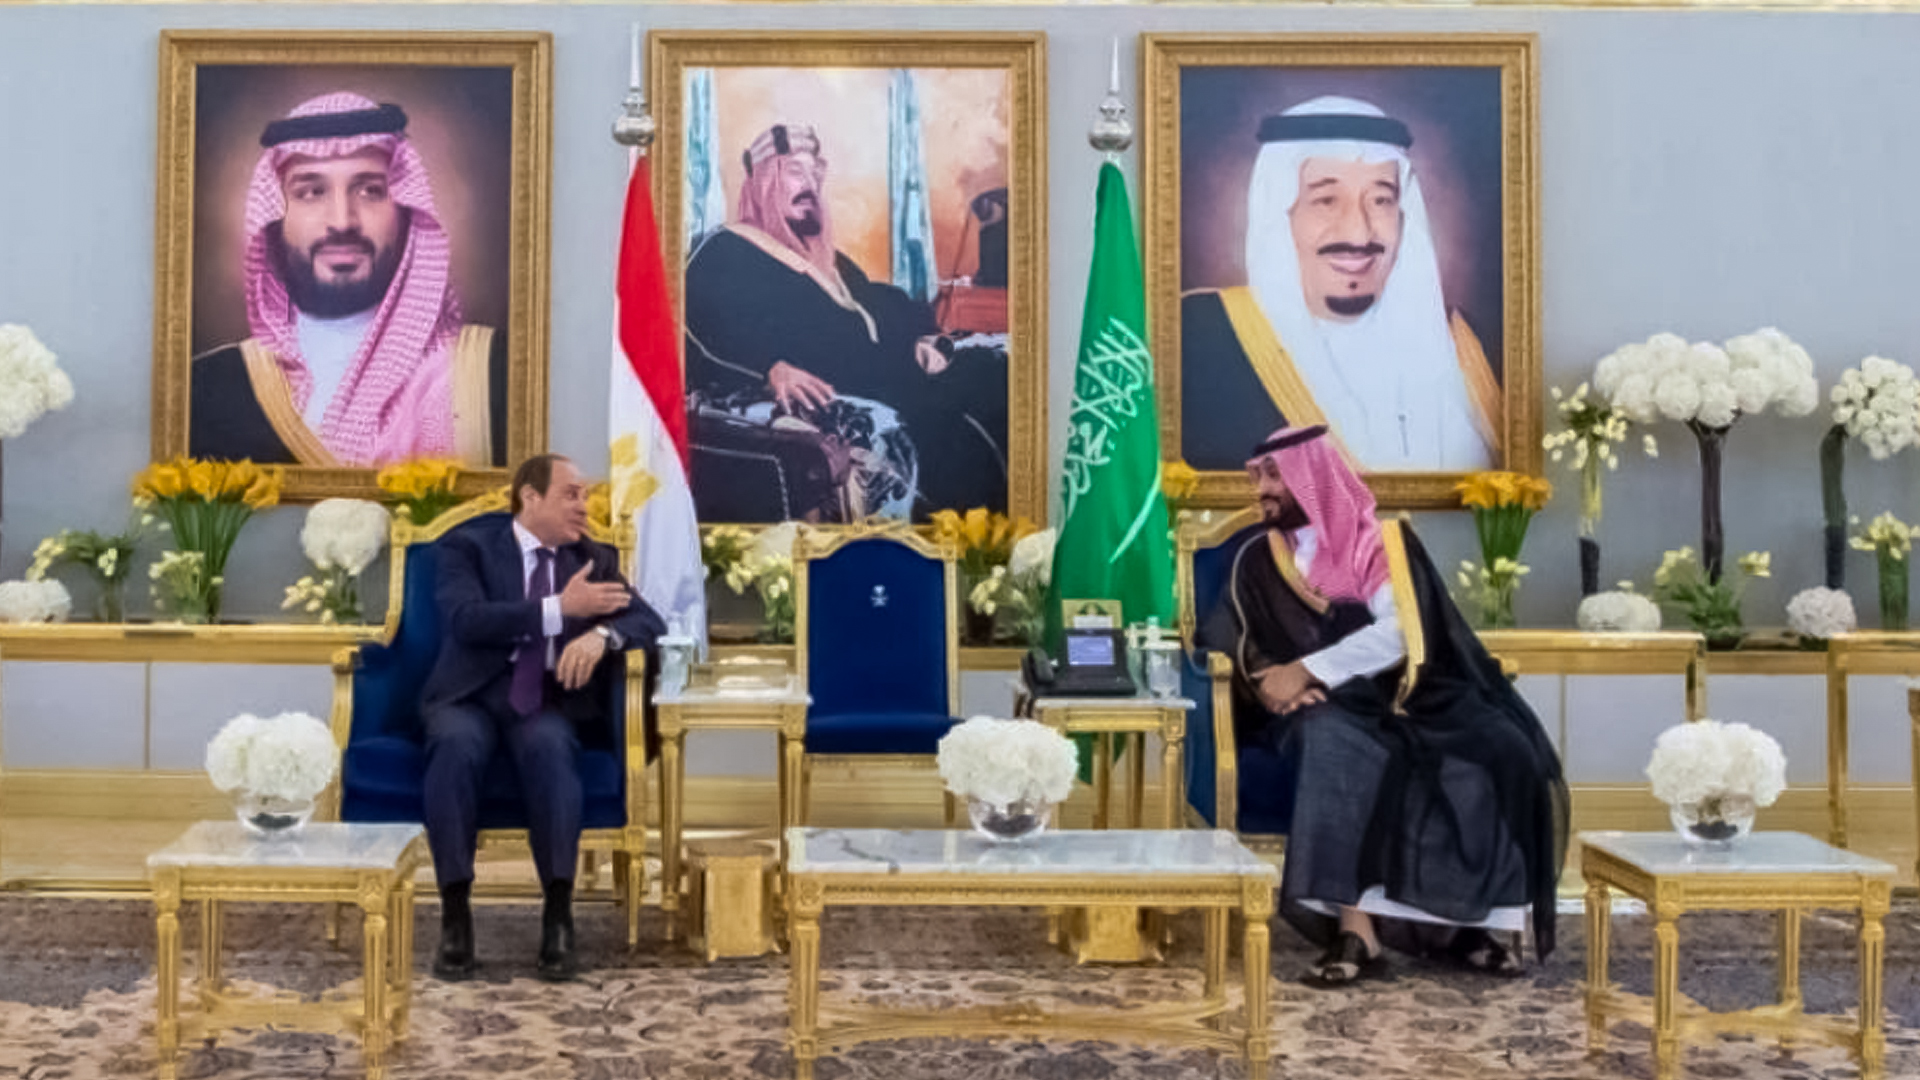 أخبار مصرية سعودية Egypt Saudi رئيس جمهورية مصر العربية يصل الرياض وسمو ولي العهد في مقدمة مستقبليه